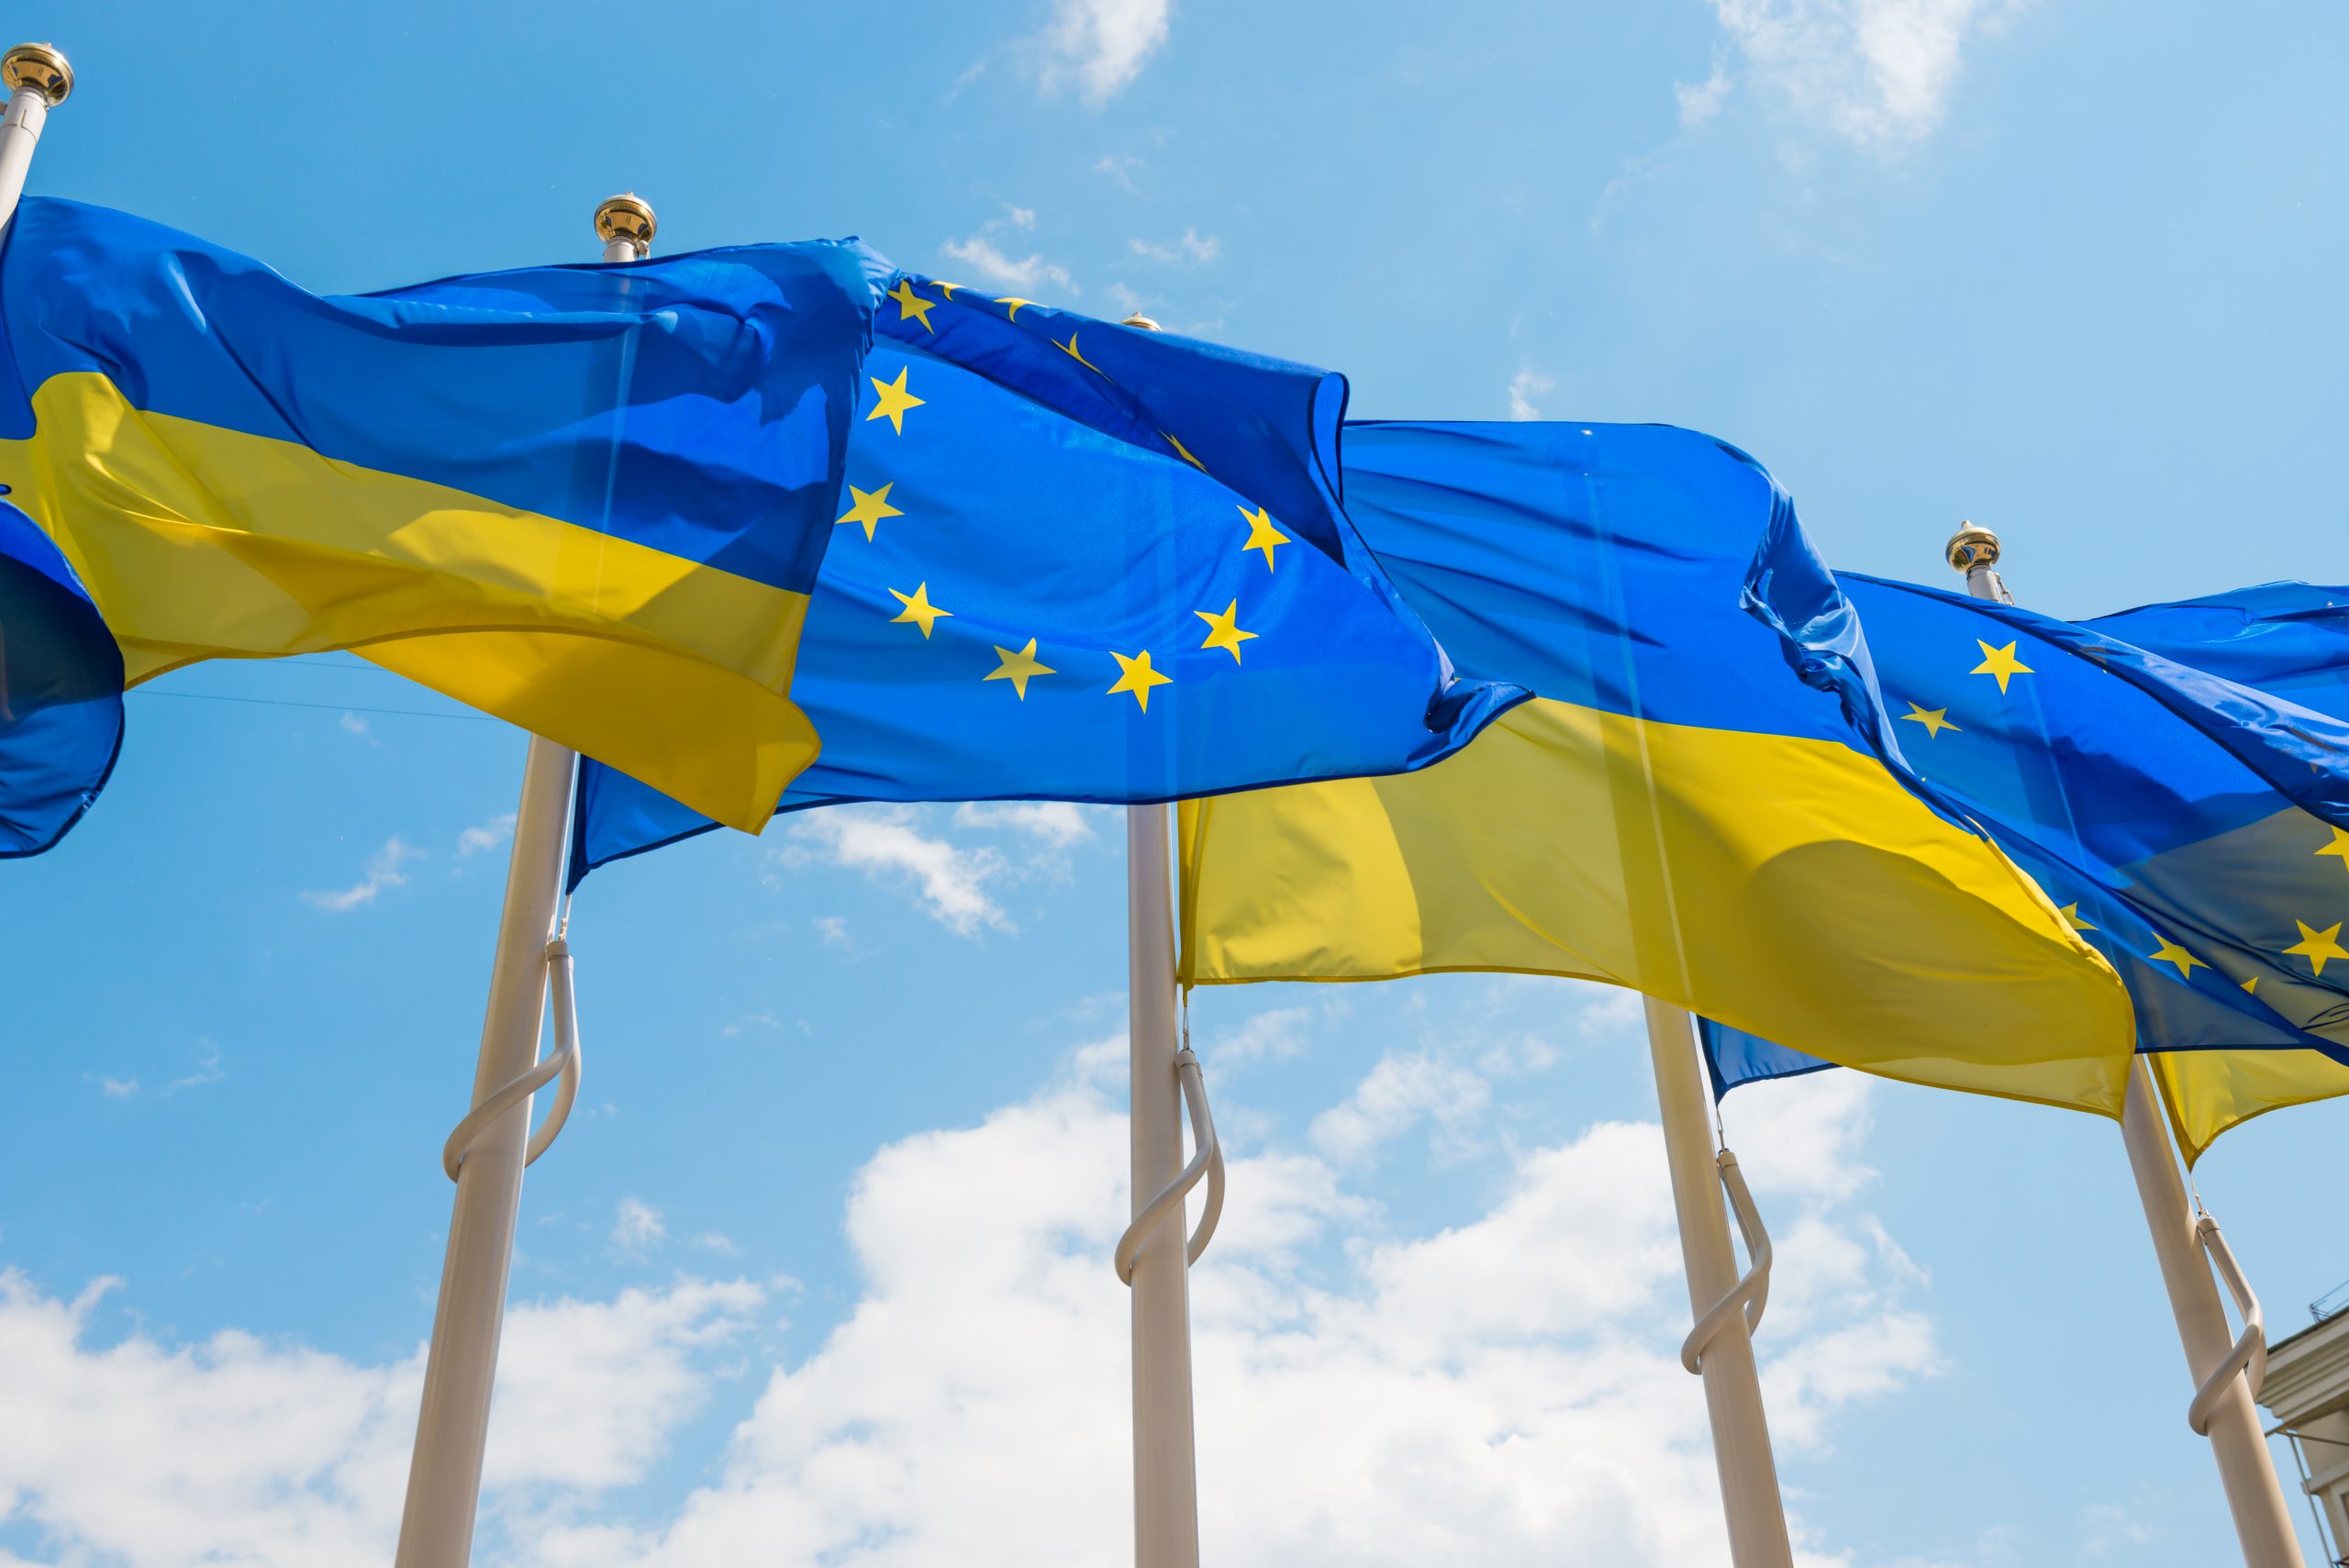 ΕΕ: Παρατείνει για 1 χρόνο την άρση των δασμών για εισαγωγές από την Ουκρανία